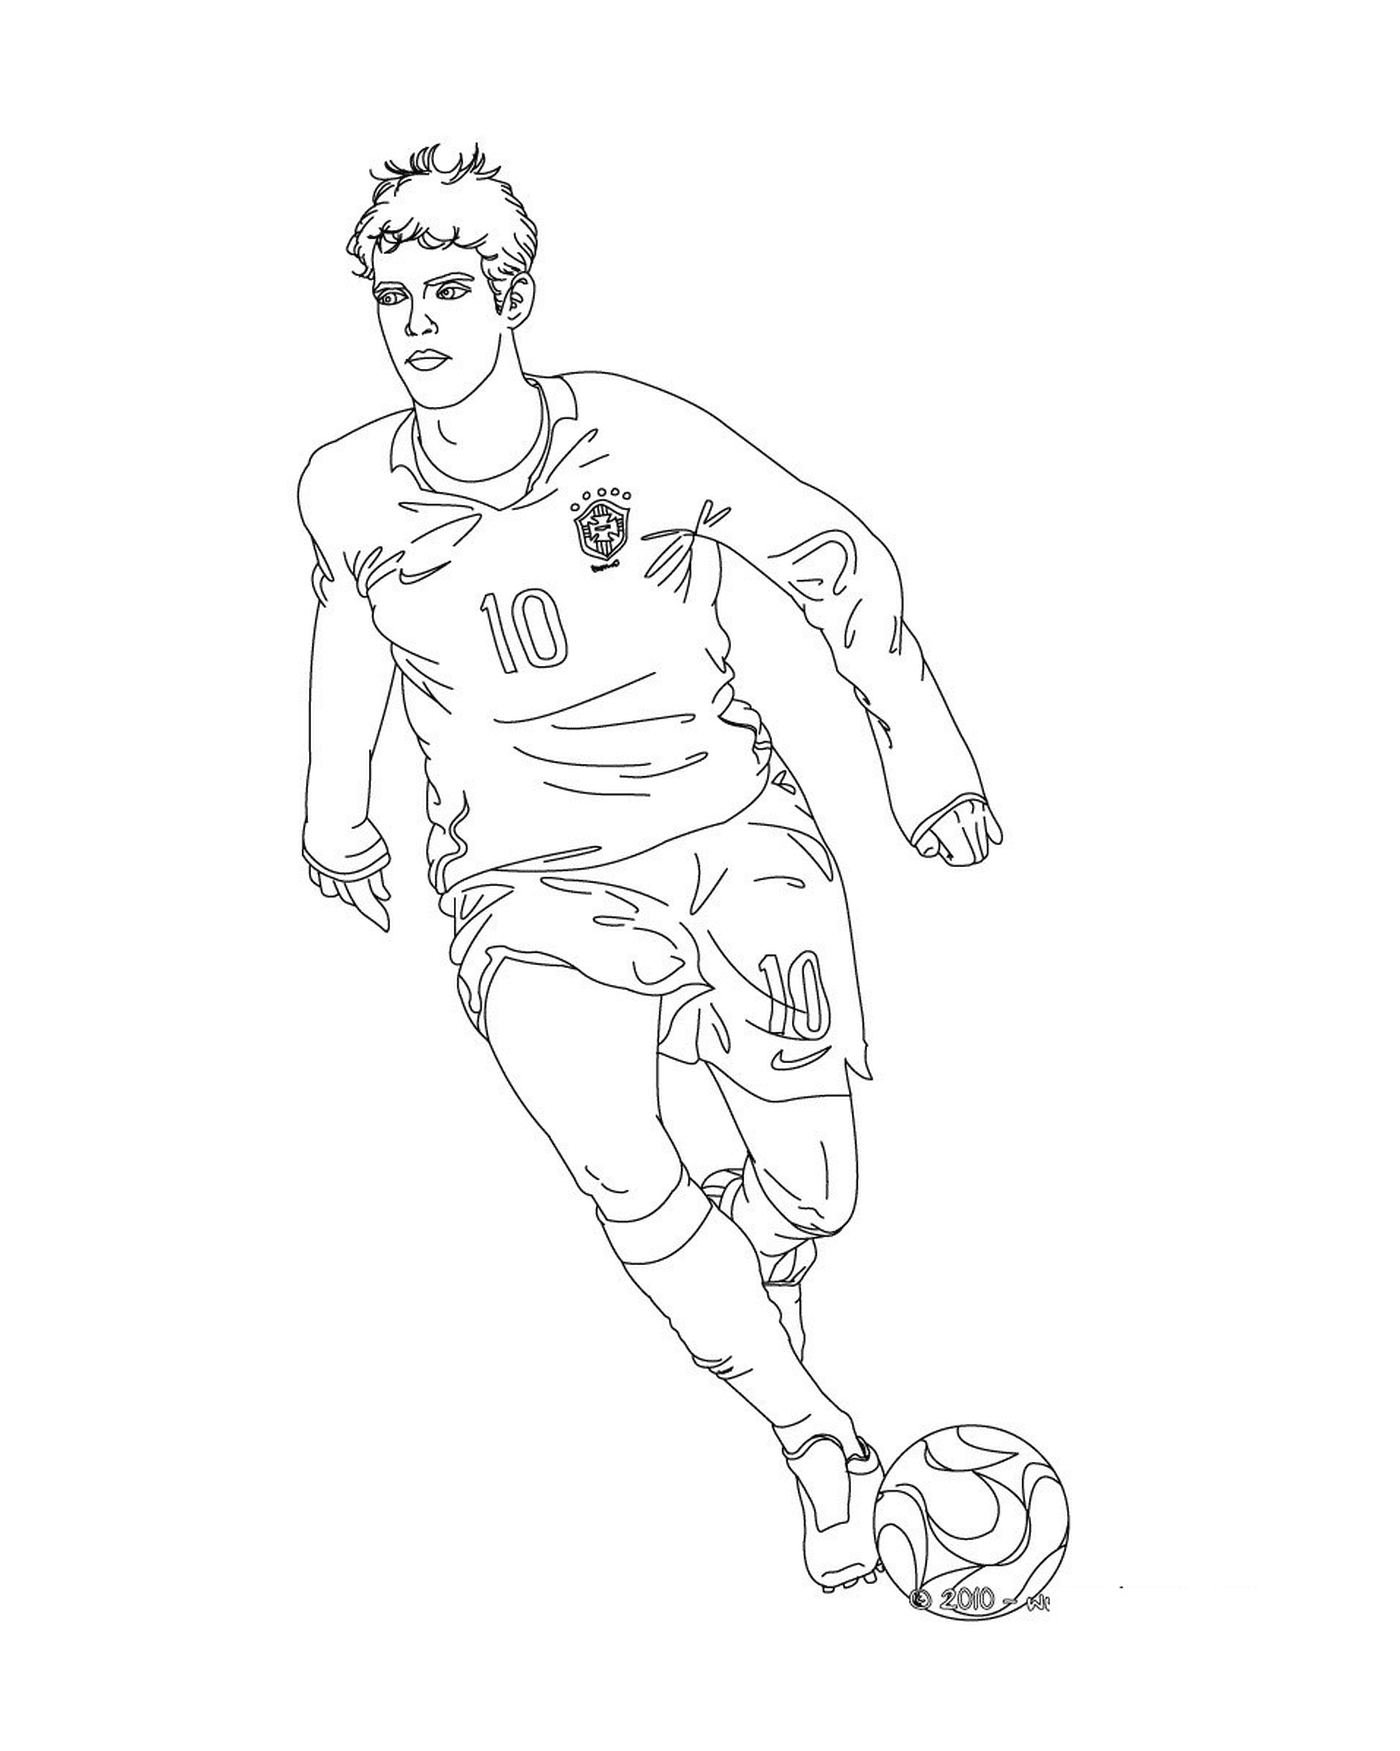  A man playing football, Kaka 